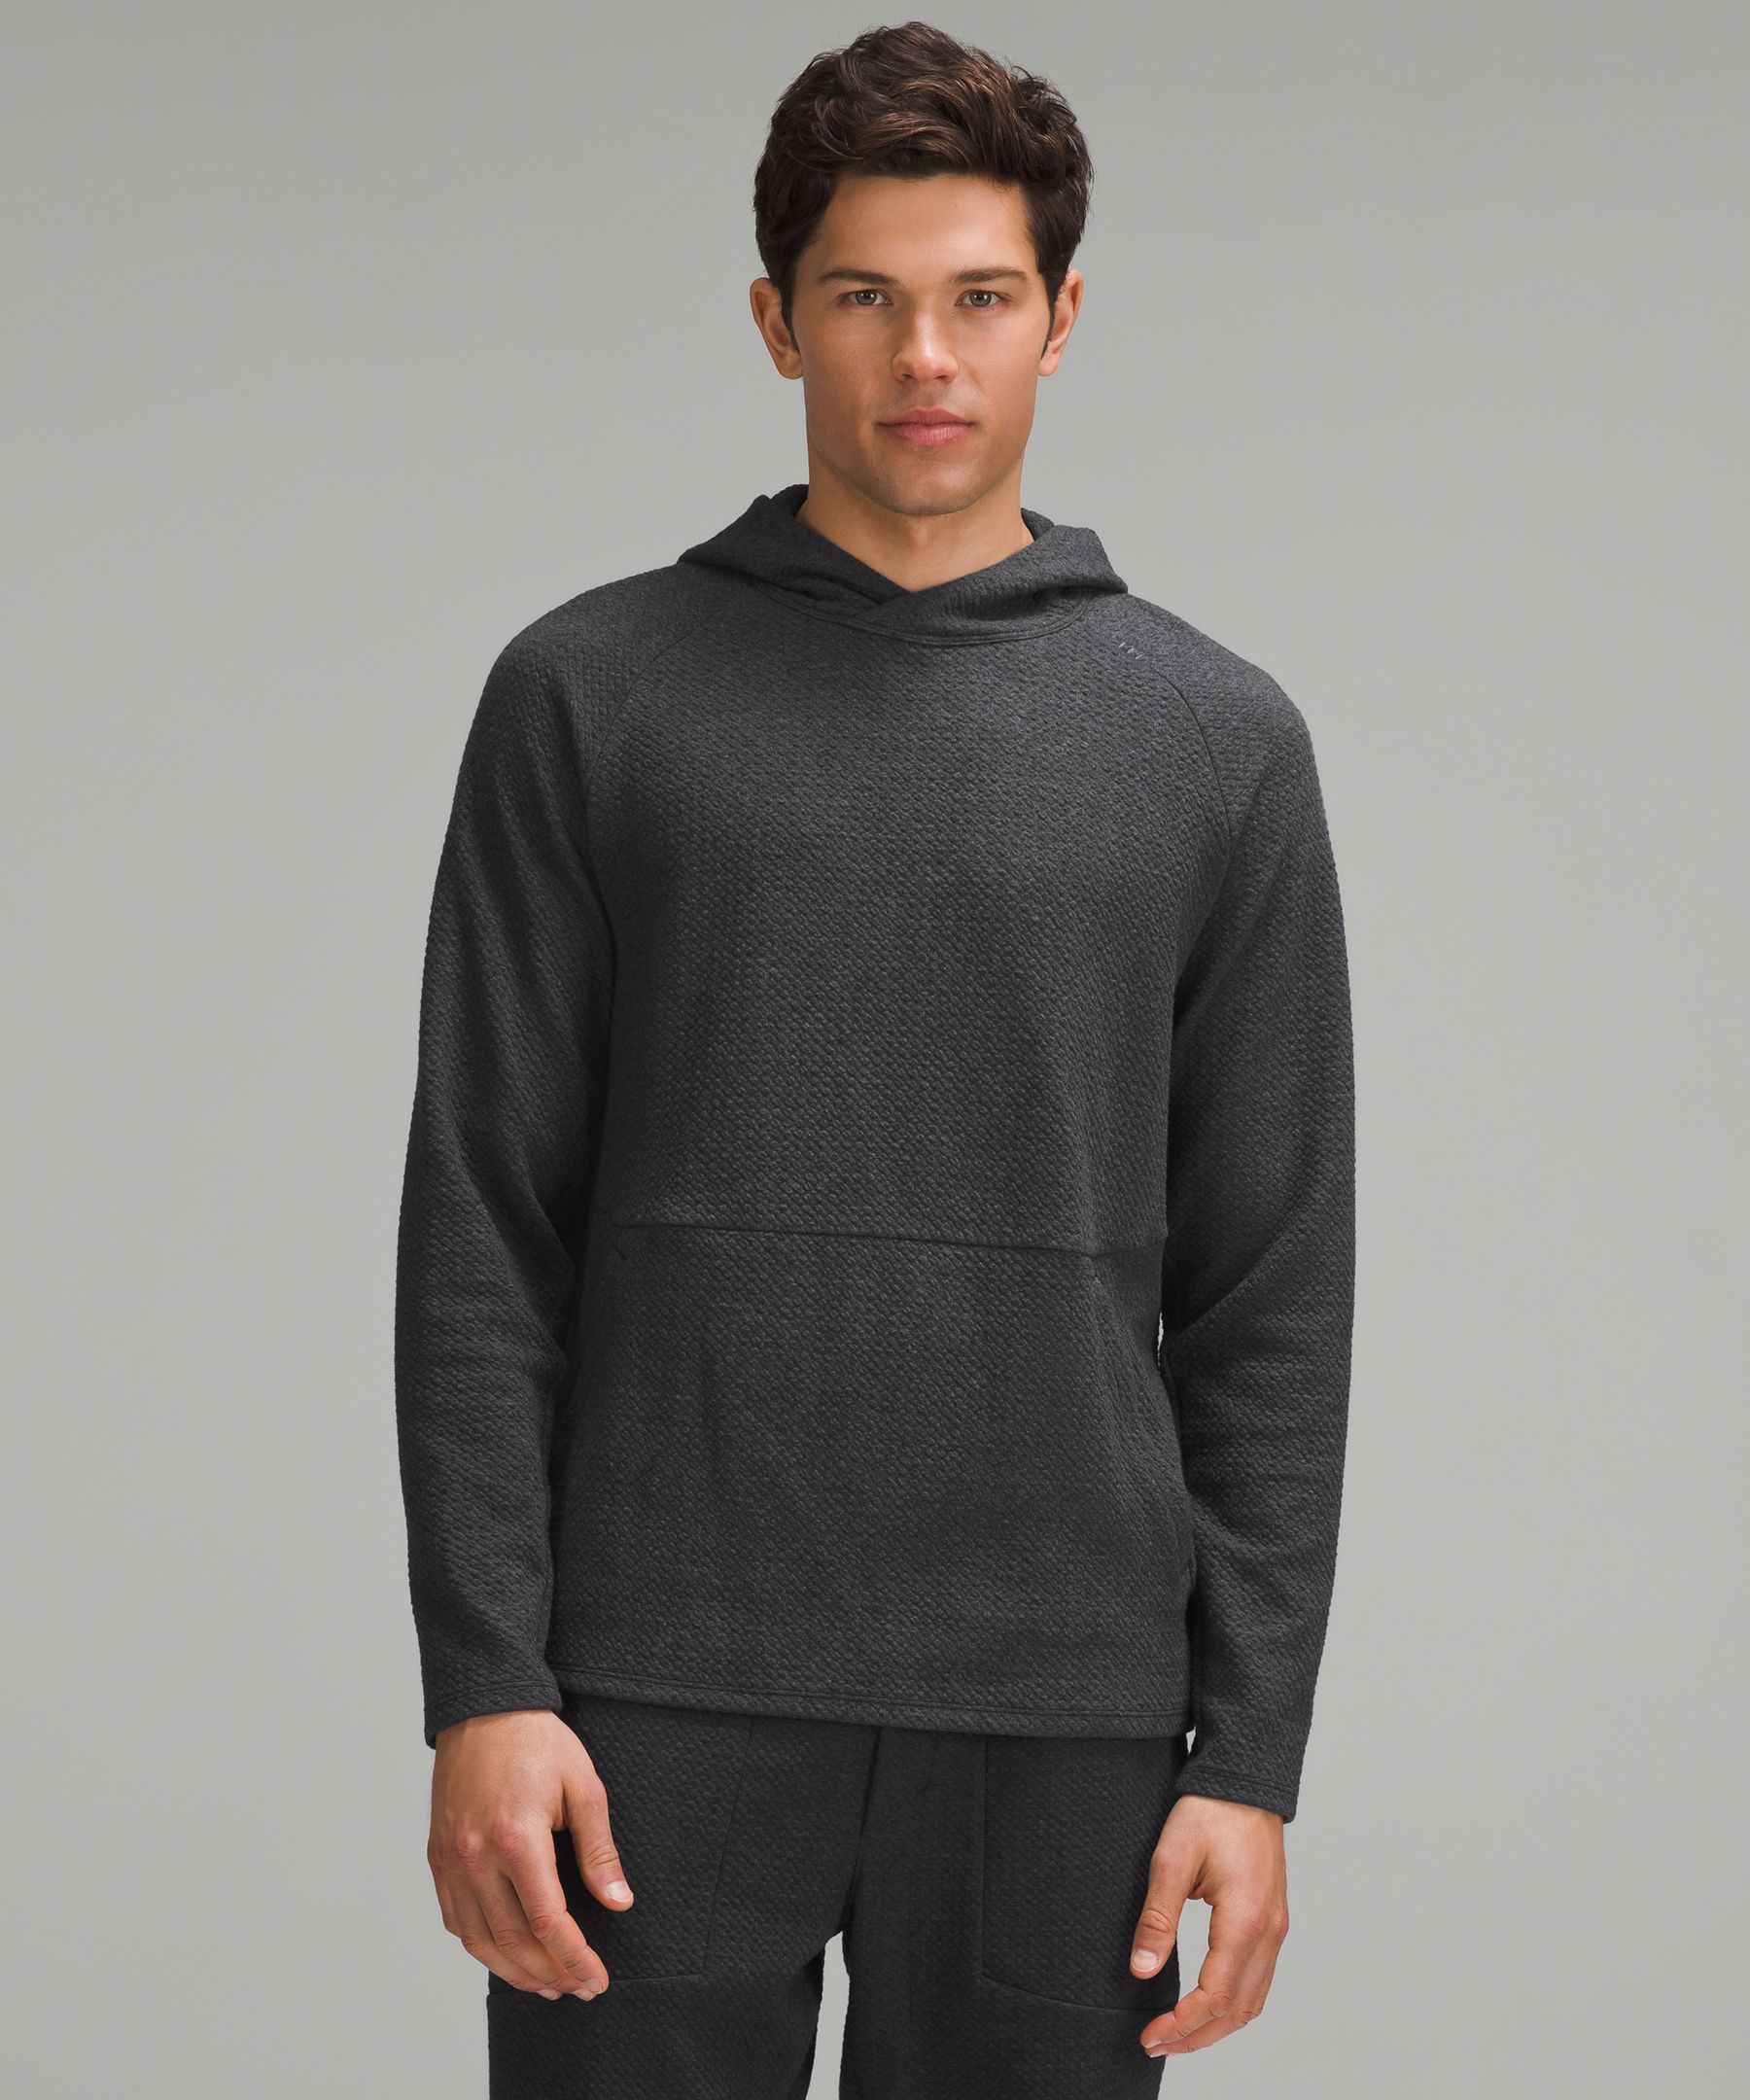 black lululemon sweater